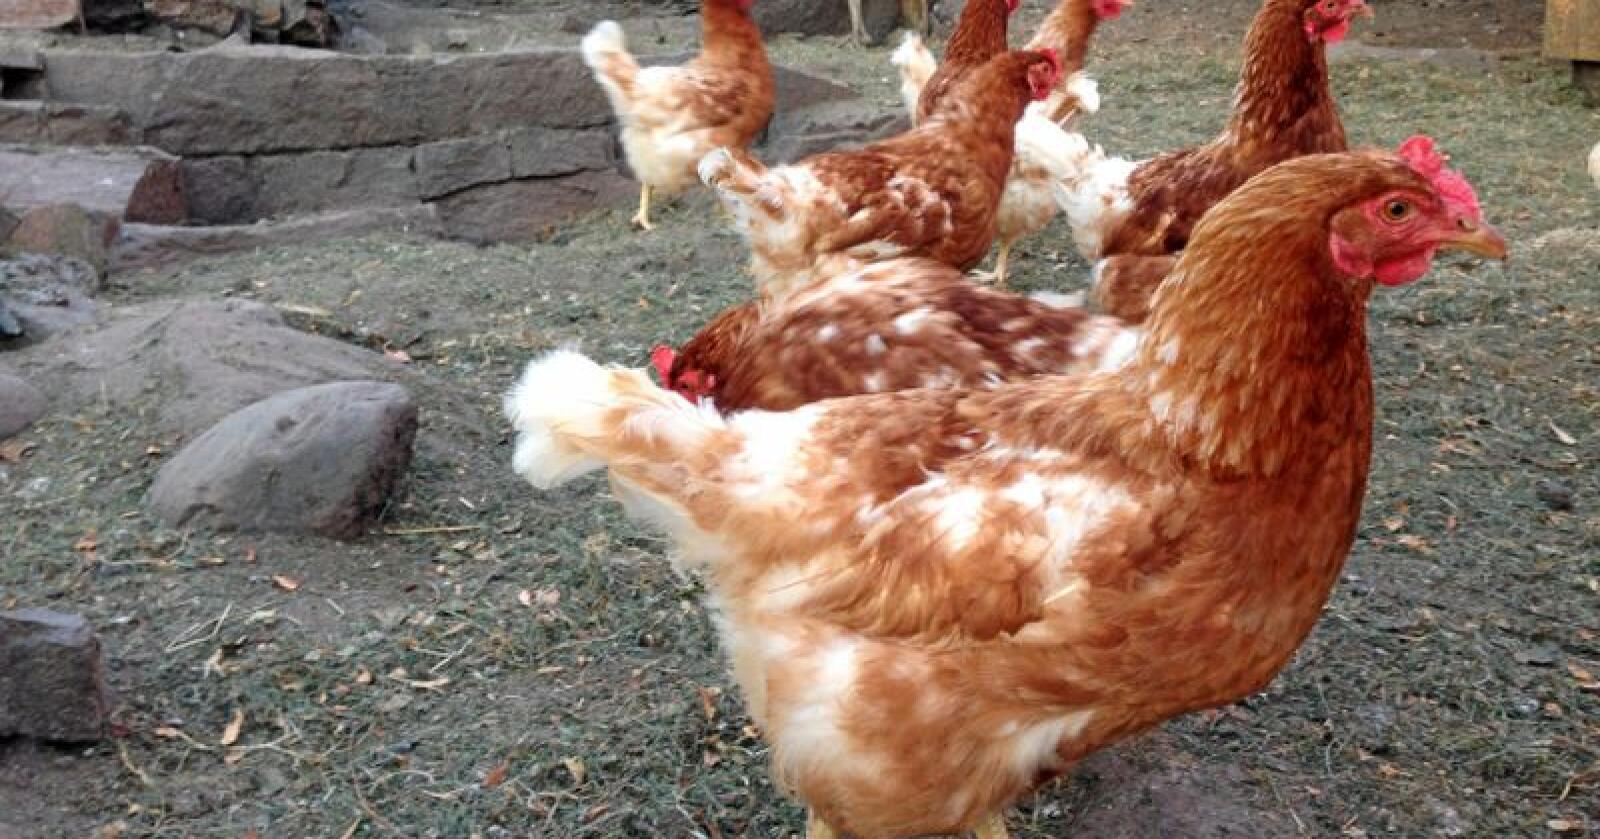 Høner som ikkje er redde for menneske legg dei største egga, viser ny forsking. (Foto: Kari Hamre / NPK)